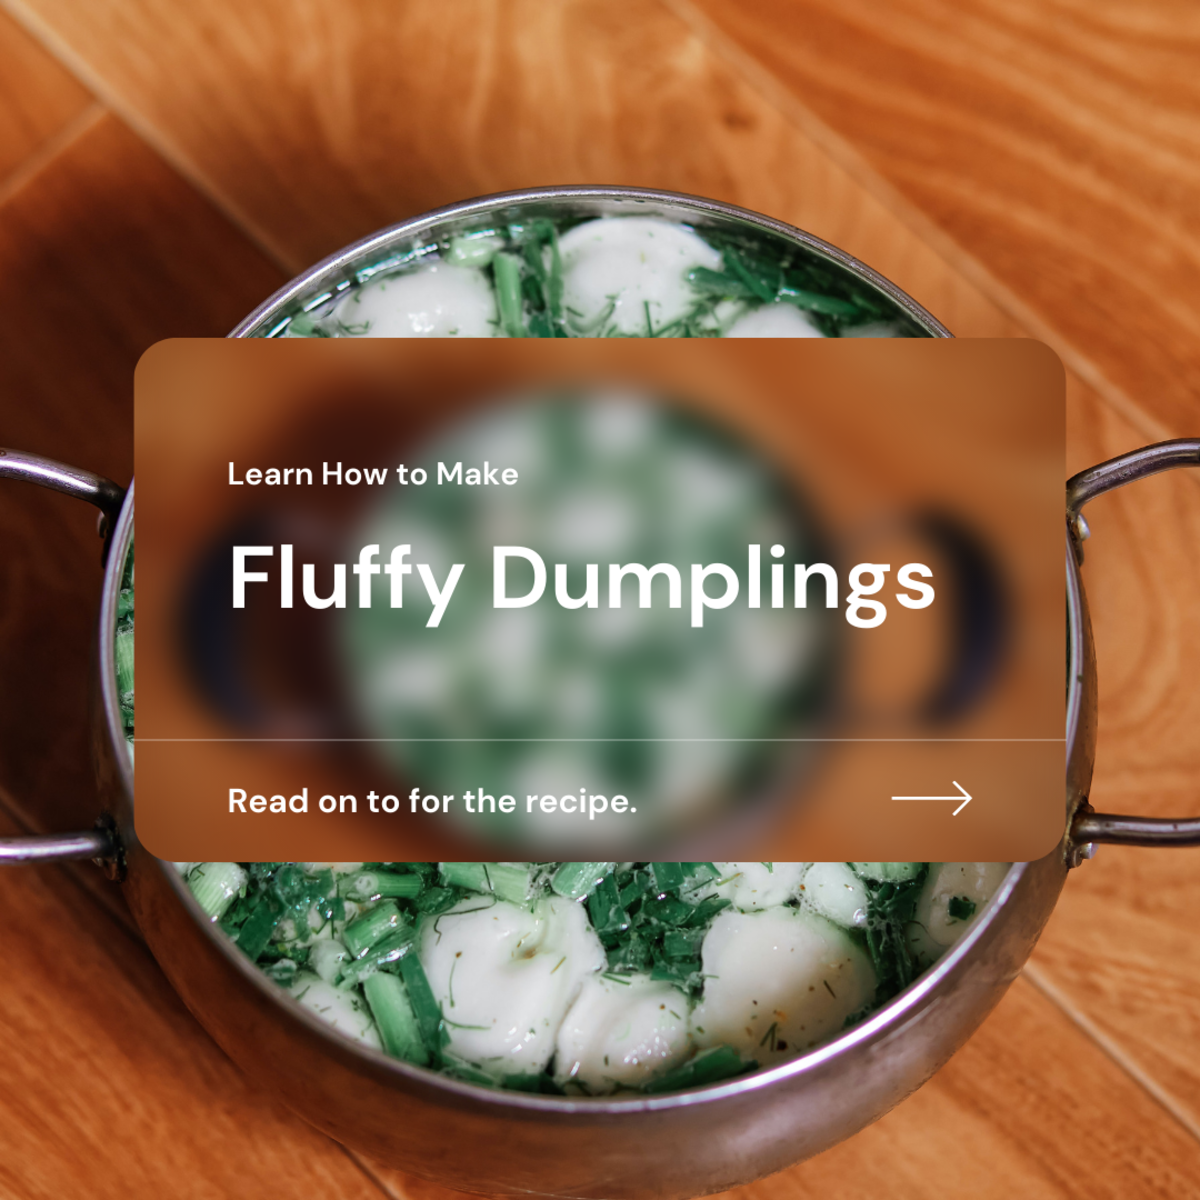 Fluffy dumplings